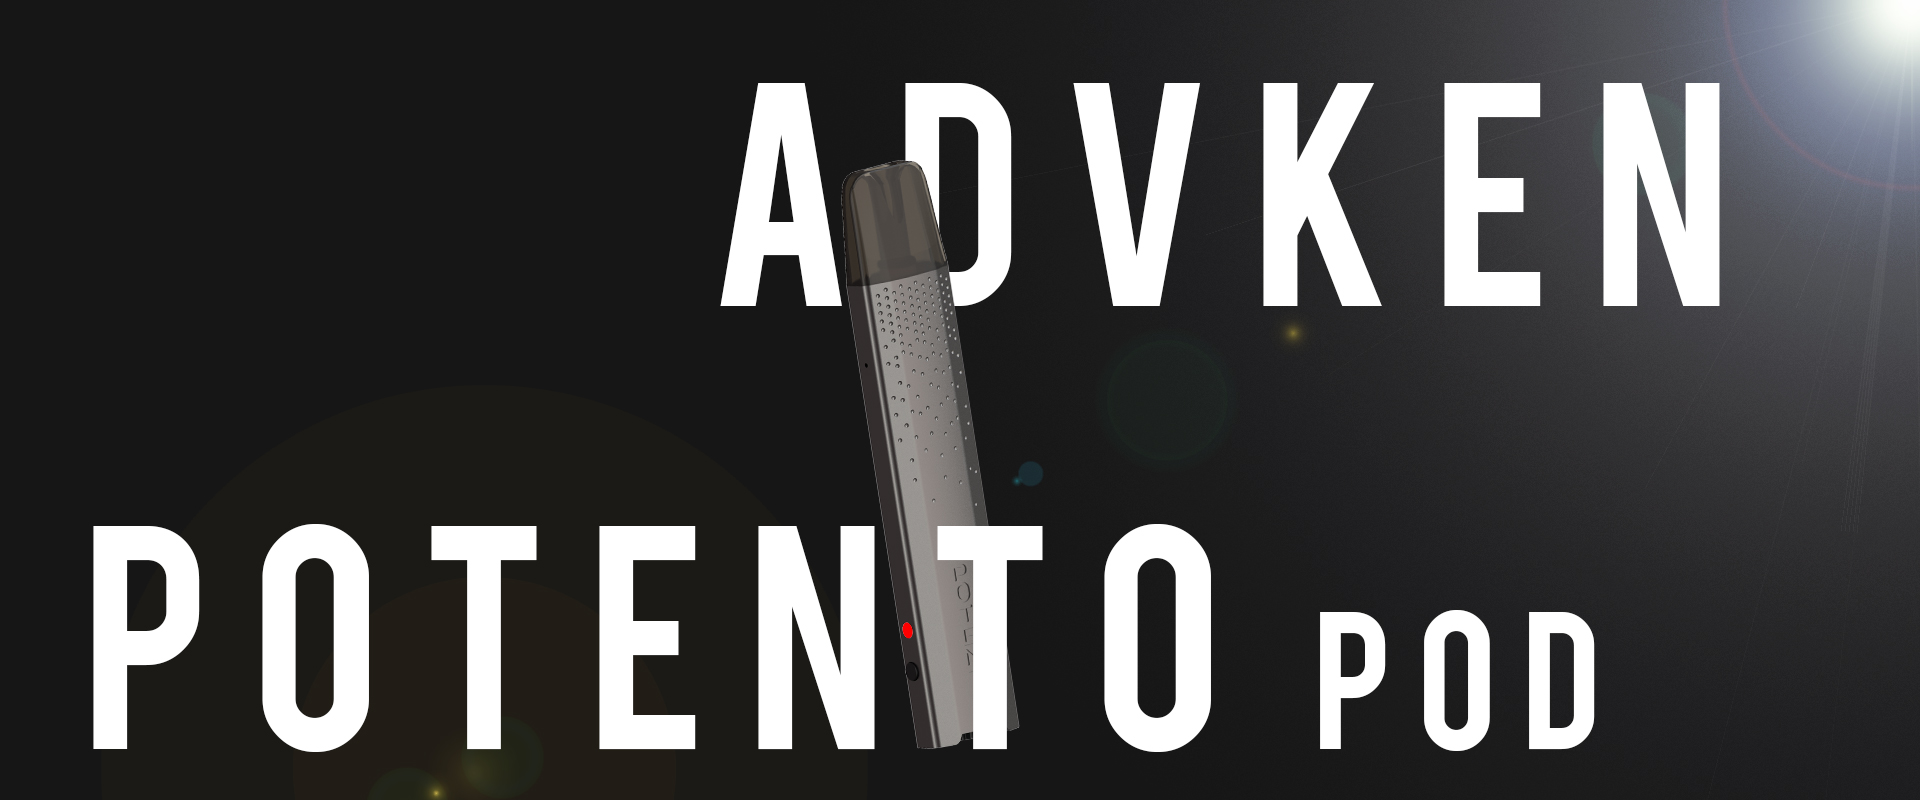 Advken Potento Pod Kit V1